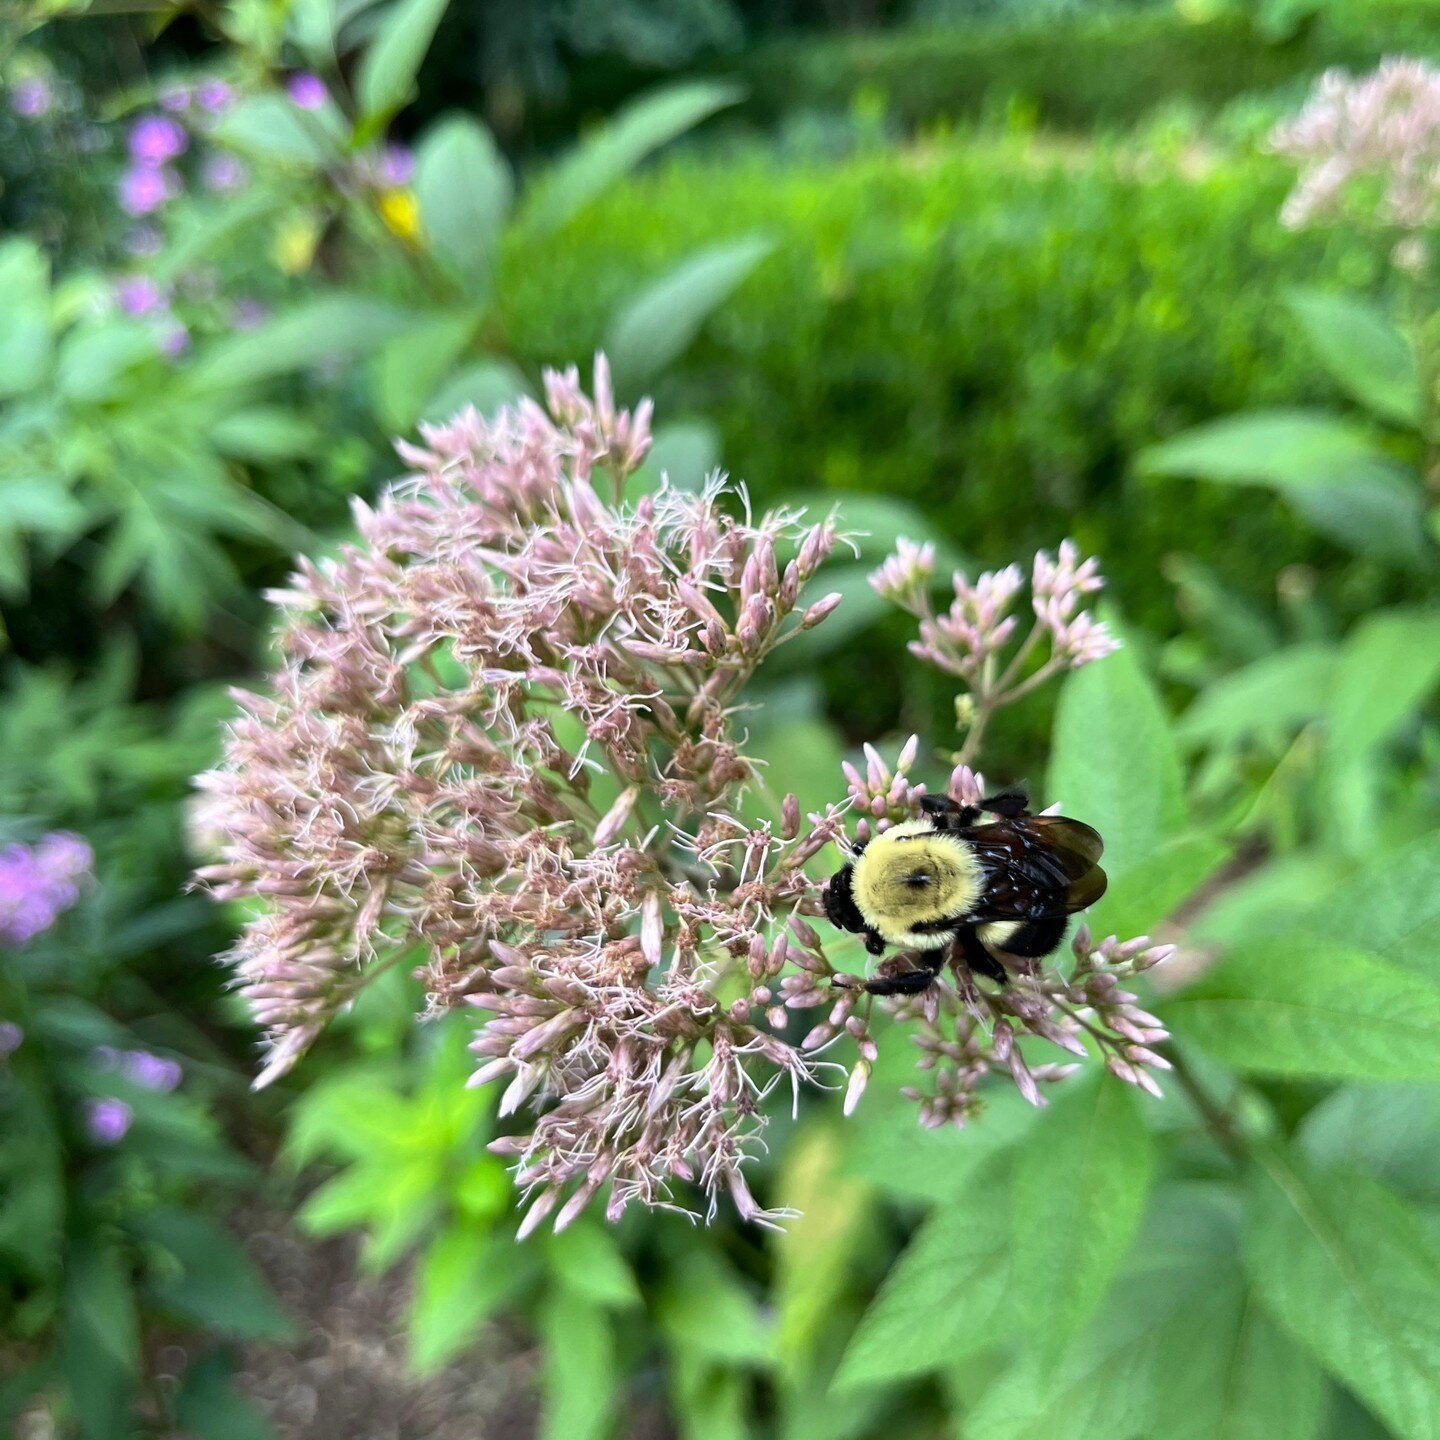 &quot;A bumblebee nectaring from our Joe-Pye weed, Eutrochium purpureum&quot; - Helen Yoest 

Read more about Joslin Garden at: https://cityofoaksfoundation.org/helens-blog